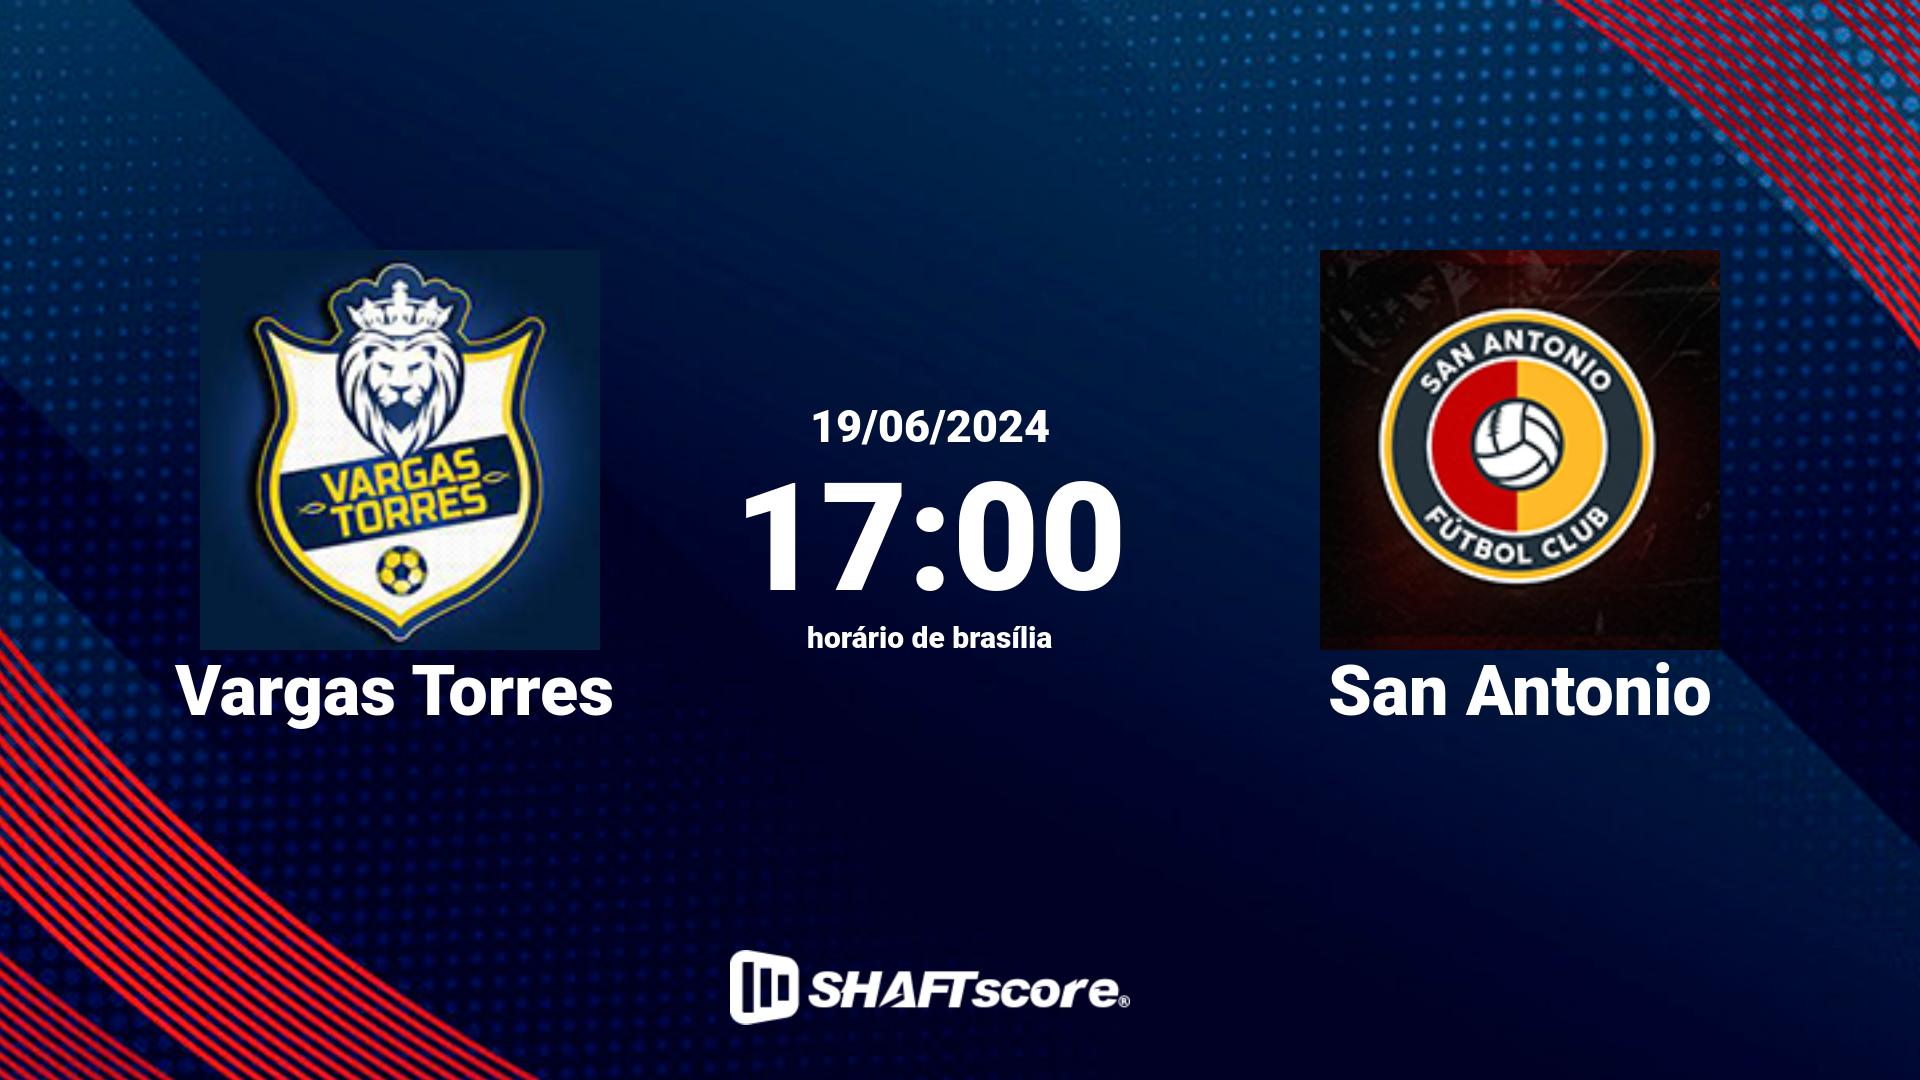 Estatísticas do jogo Vargas Torres vs San Antonio 19.06 17:00